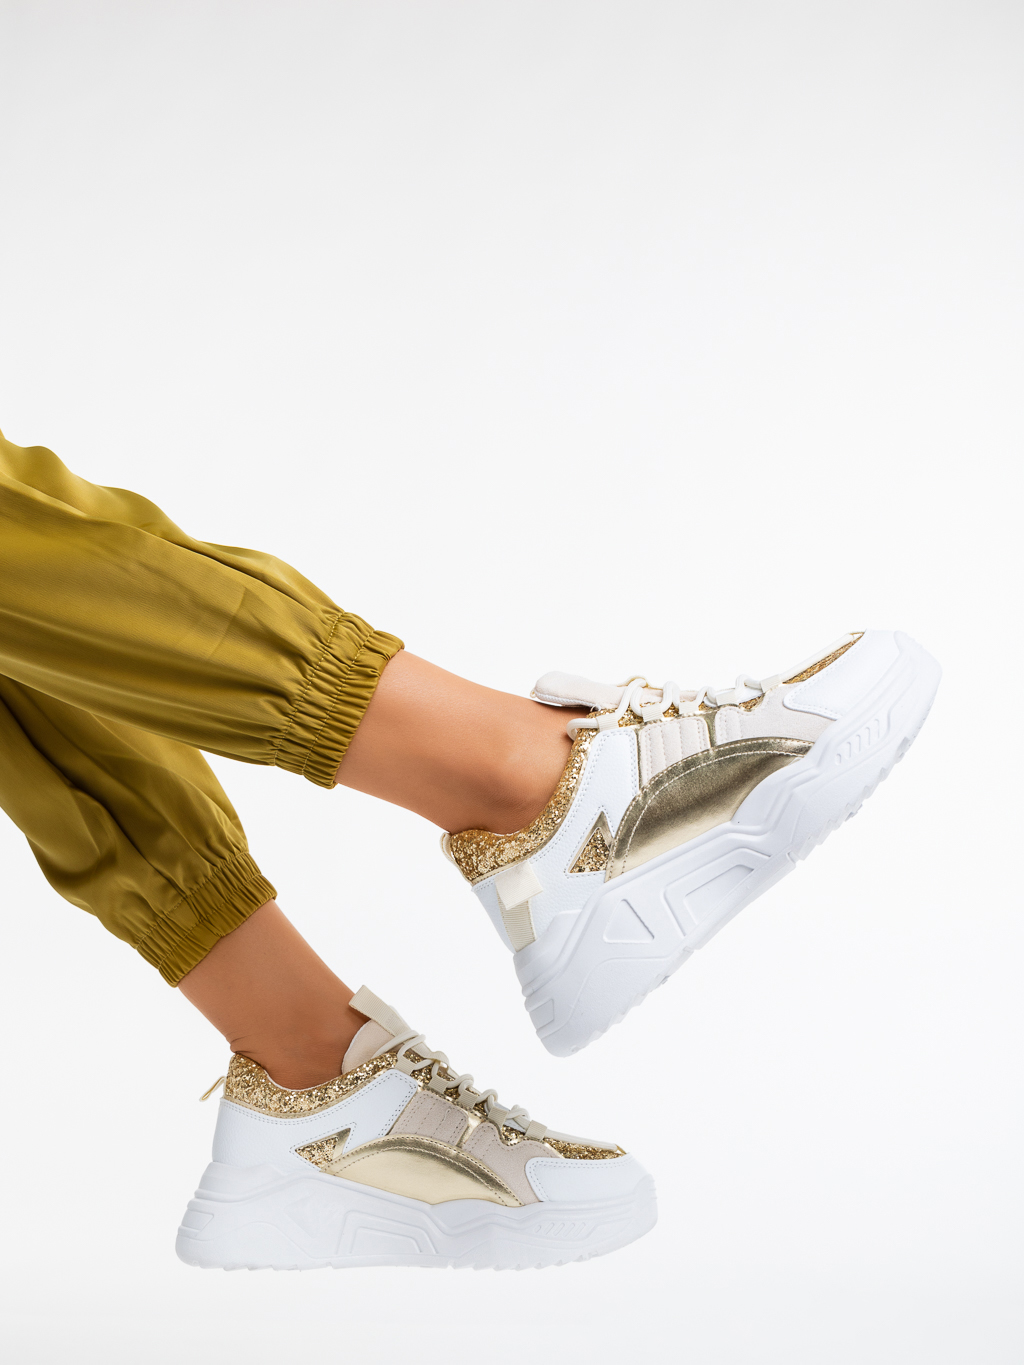 Дамски спортни обувки бели със златисто от еко кожа и текстилен материал Reena, 3 - Kalapod.bg